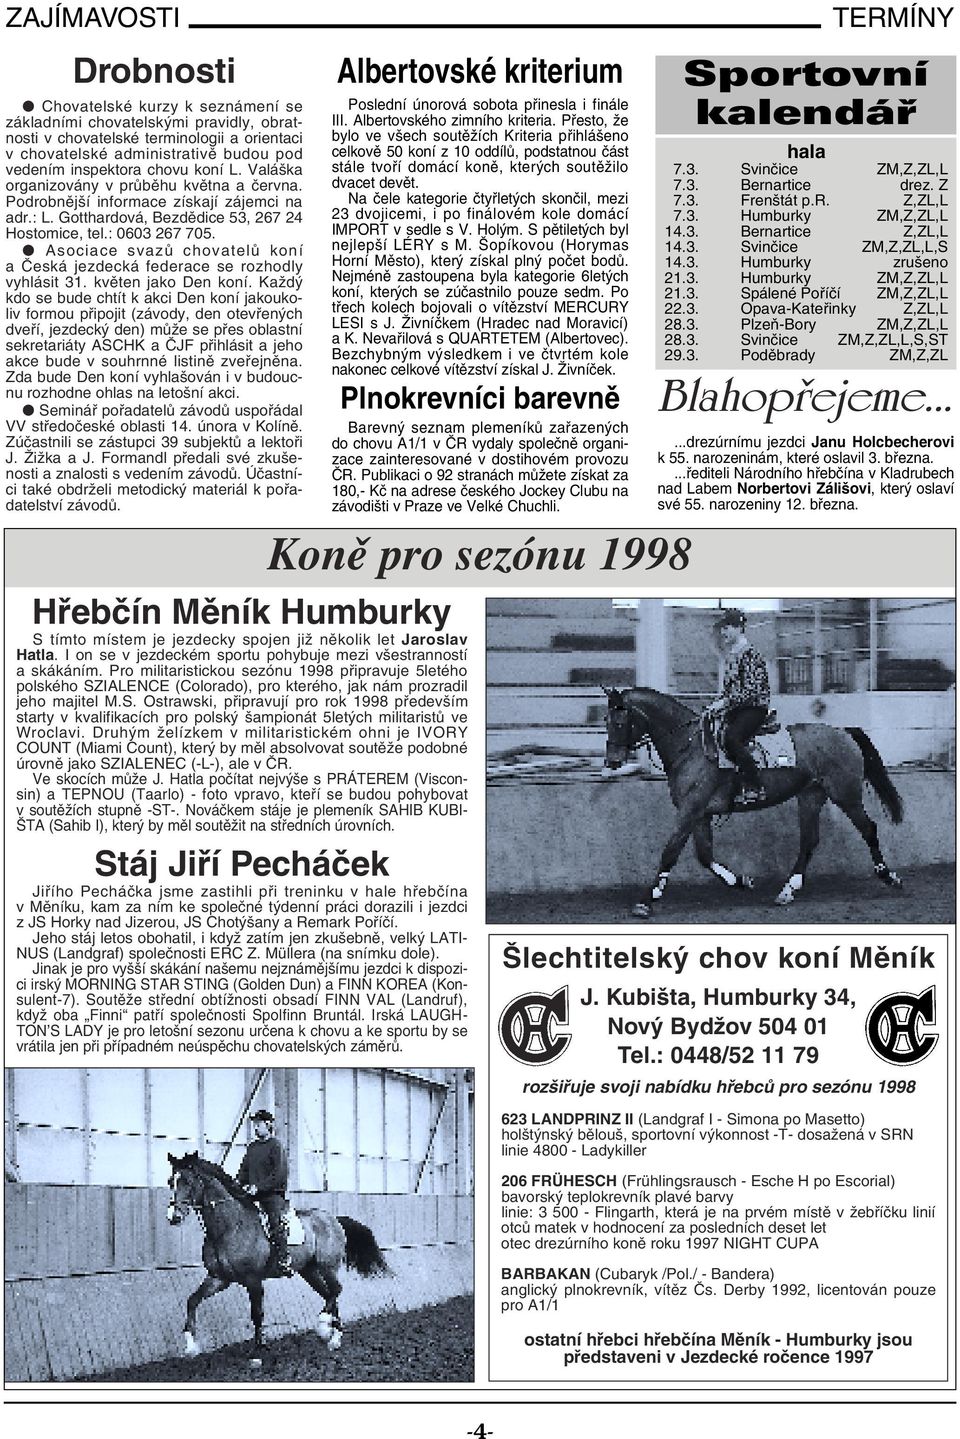 Asociace svazů chovatelů koní a Česká jezdecká federace se rozhodly vyhlásit 31. květen jako Den koní.